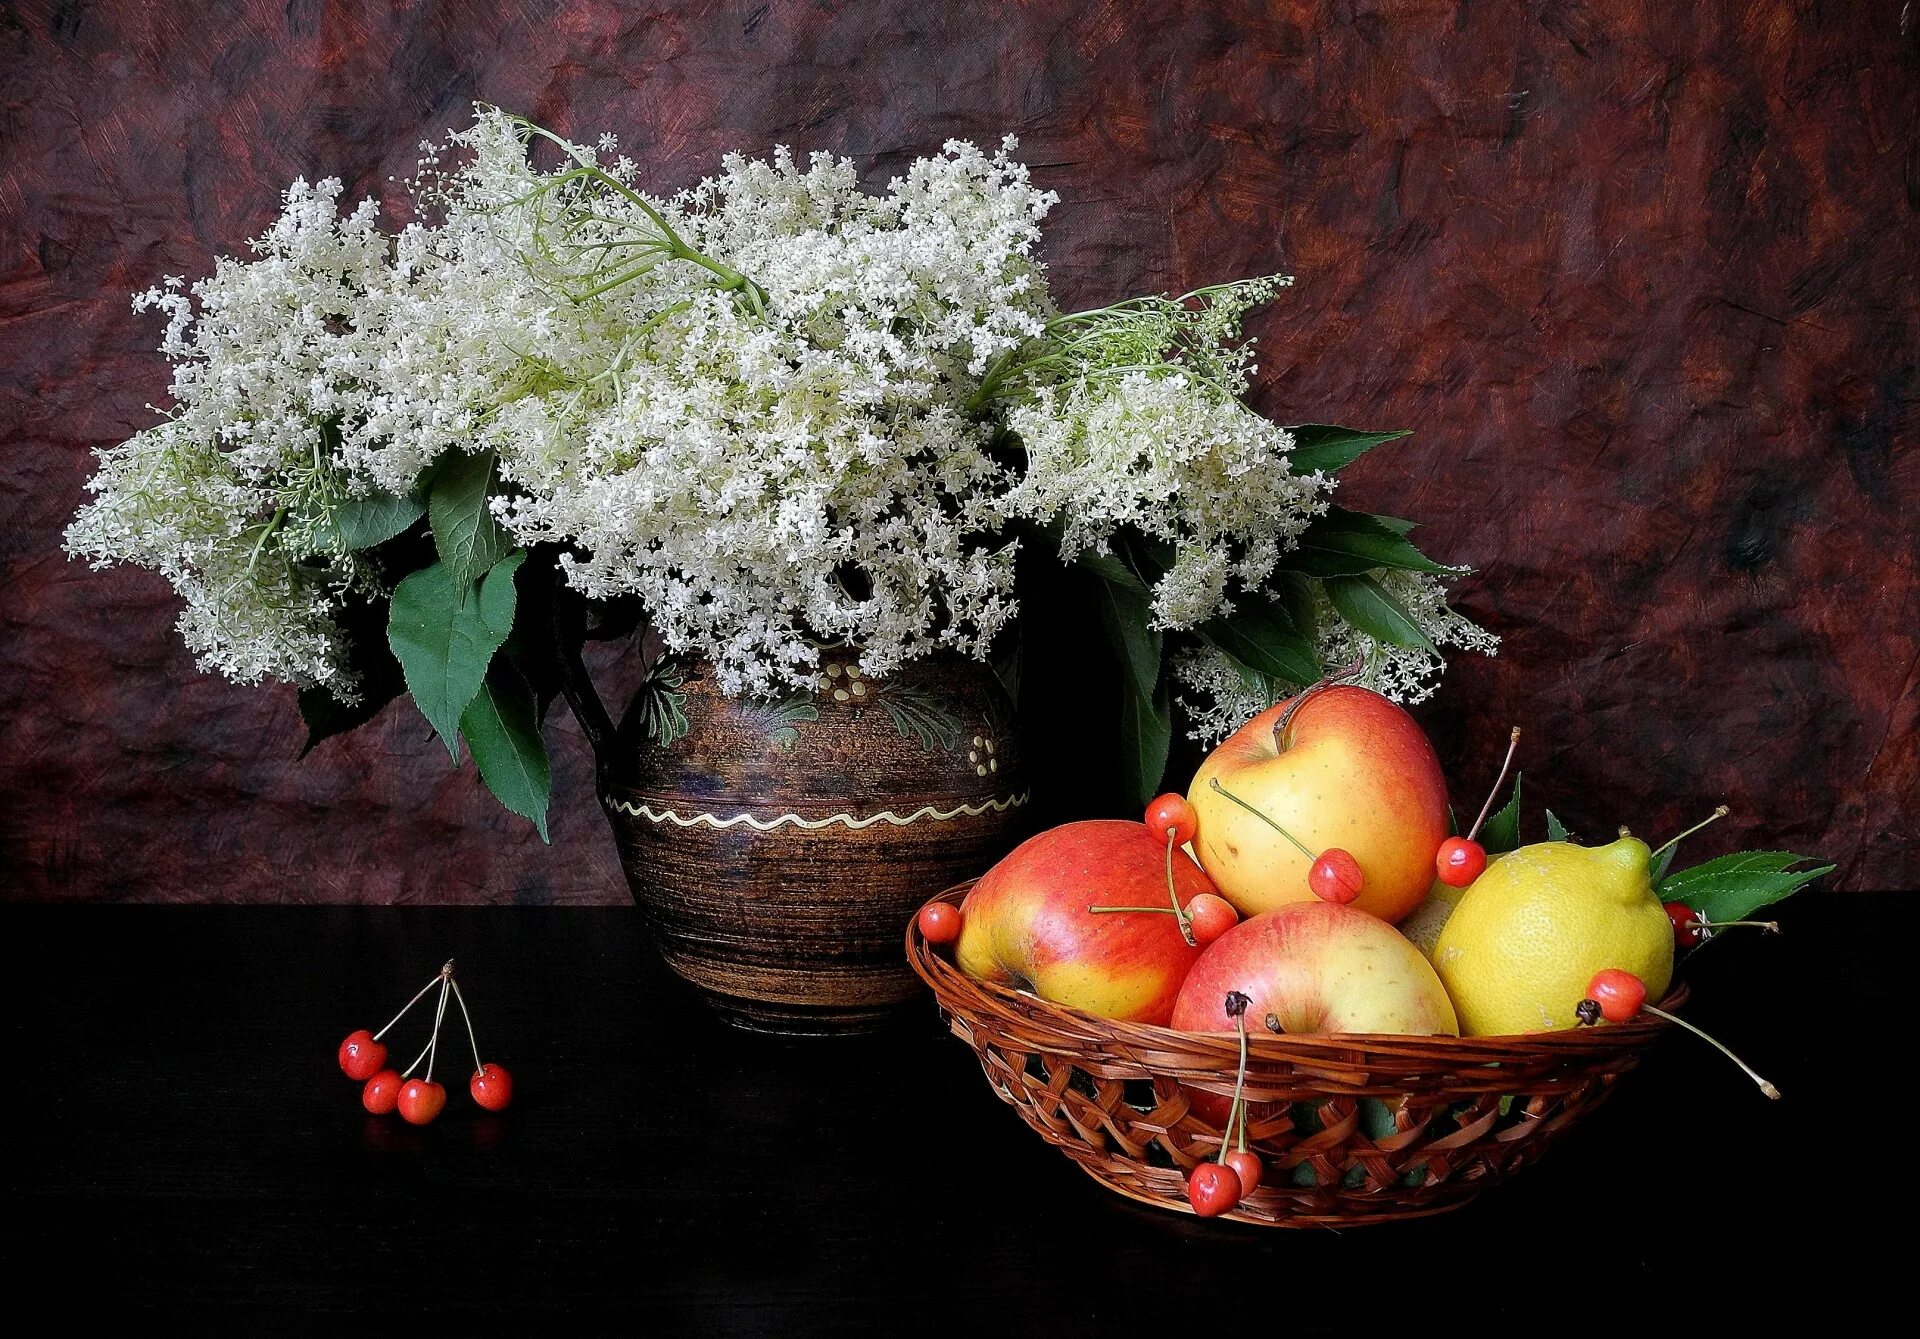 Наполненная фруктами корзина стояла на столе впр. Натюрморт. Натюрморт цветы и фрукты. Натюрморт с фруктами. Натюрморт с цветами и фруктами.